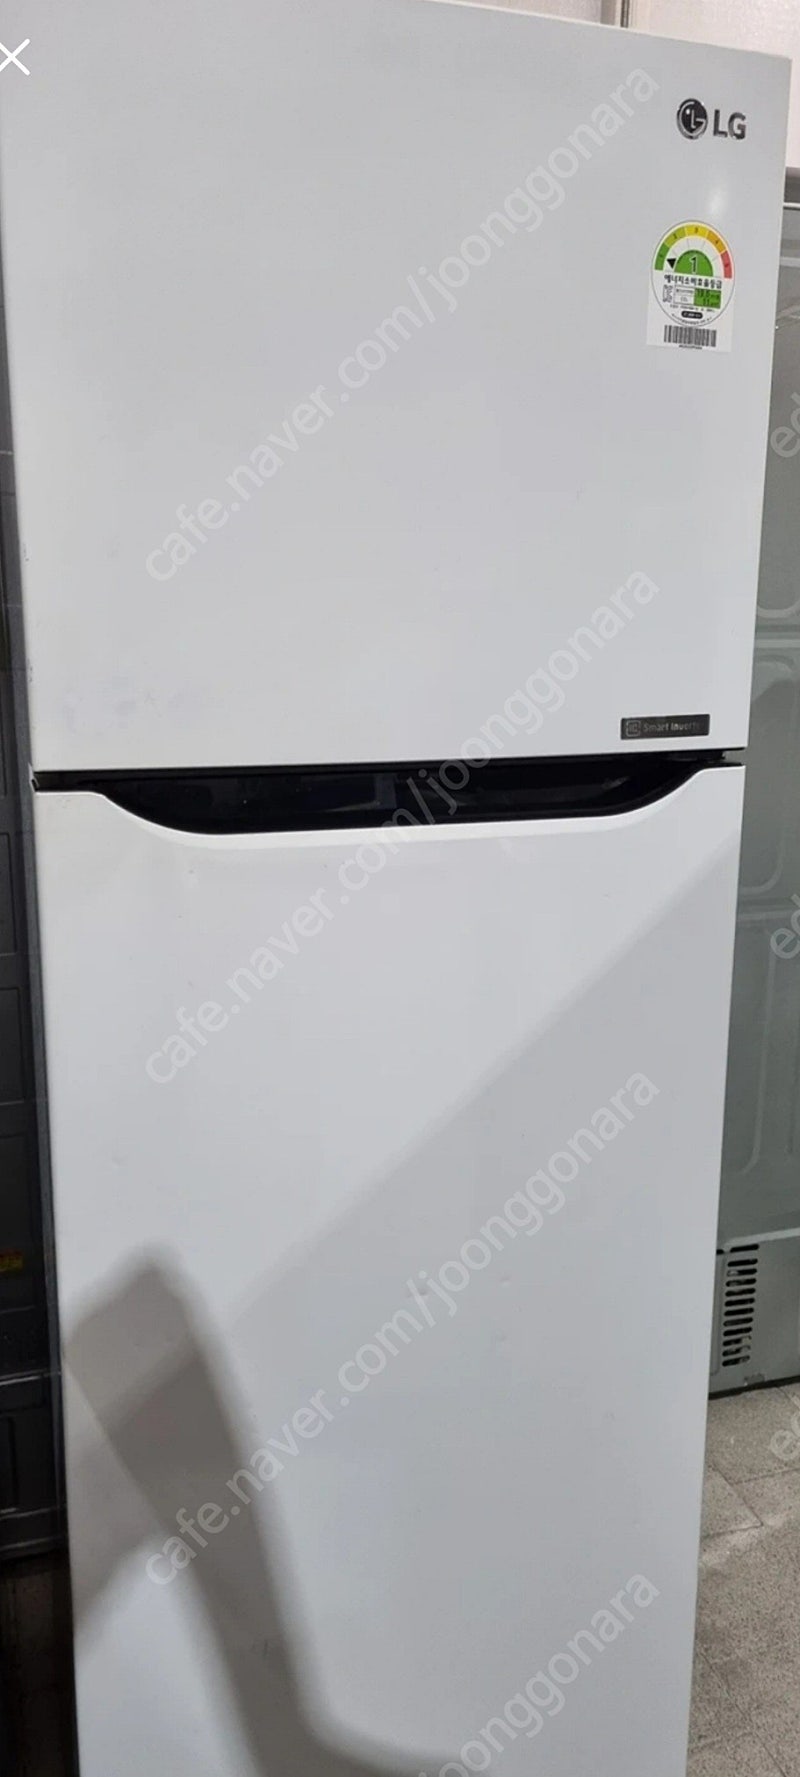 LG전자 일반형 냉장고 189L (B187WM)